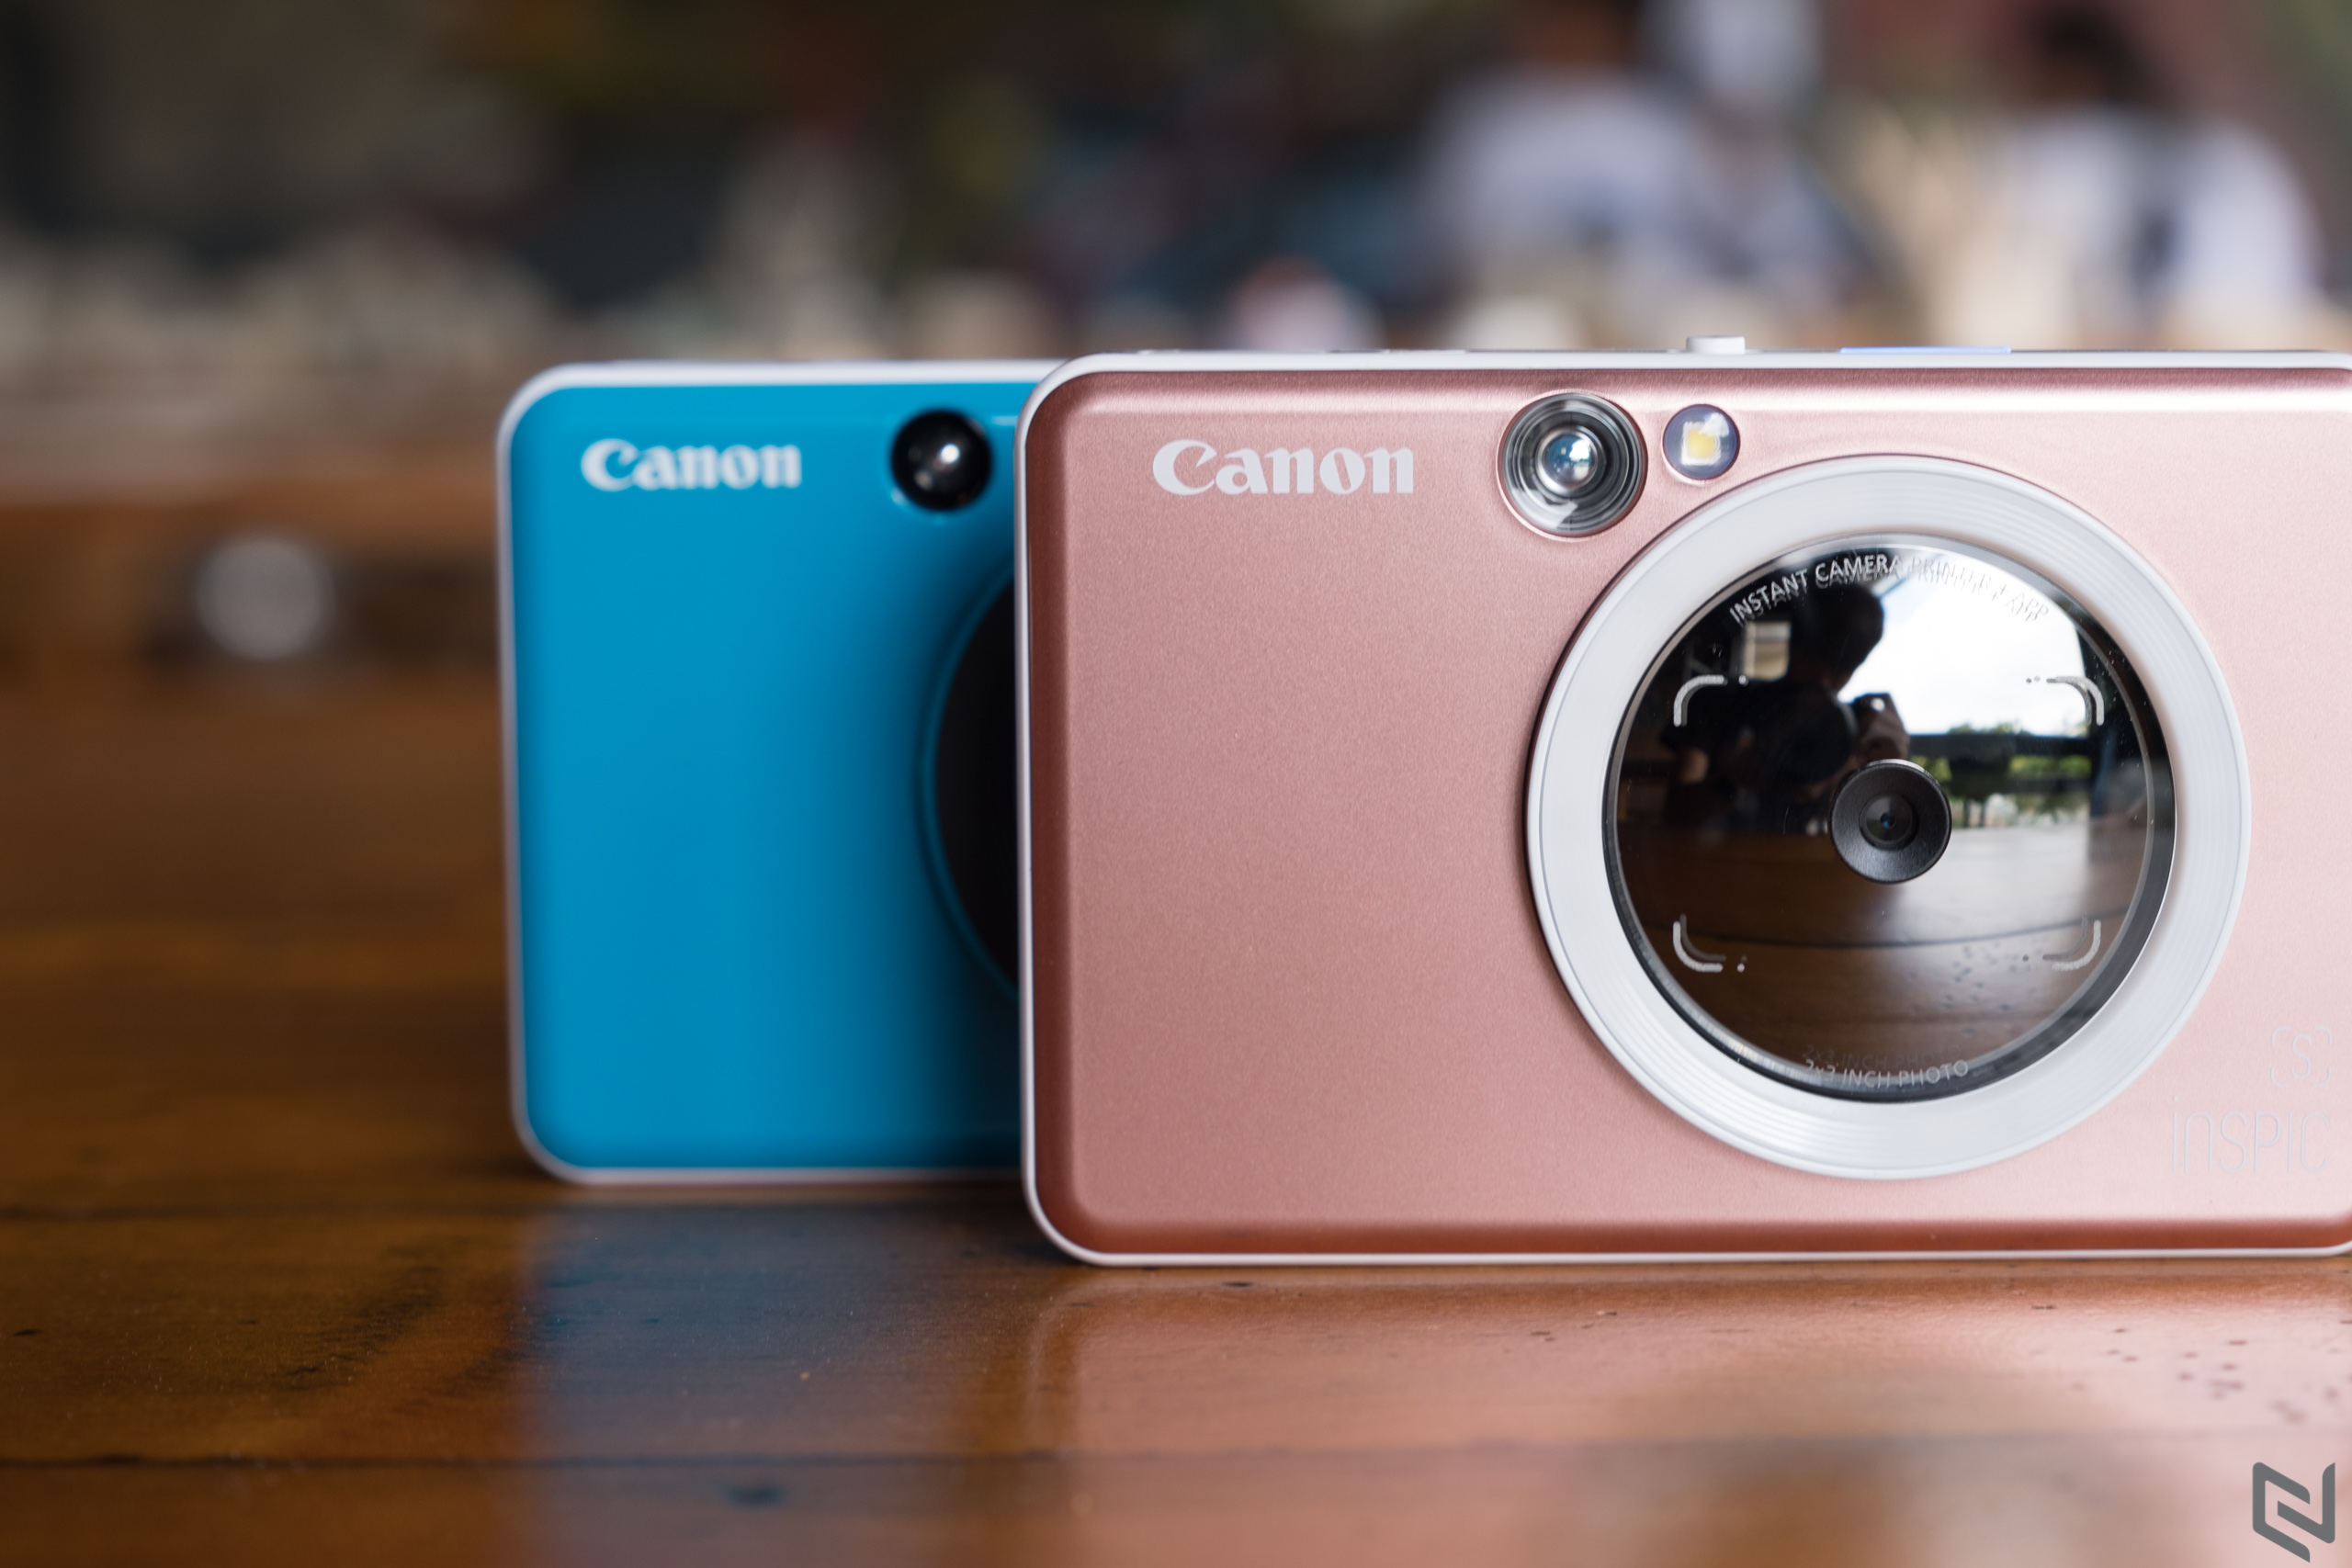 Canon ra mắt iNSPiC [S] và iNSPiC [C], máy ảnh chụp lấy liền với nhiều tuỳ chọn màu sắc